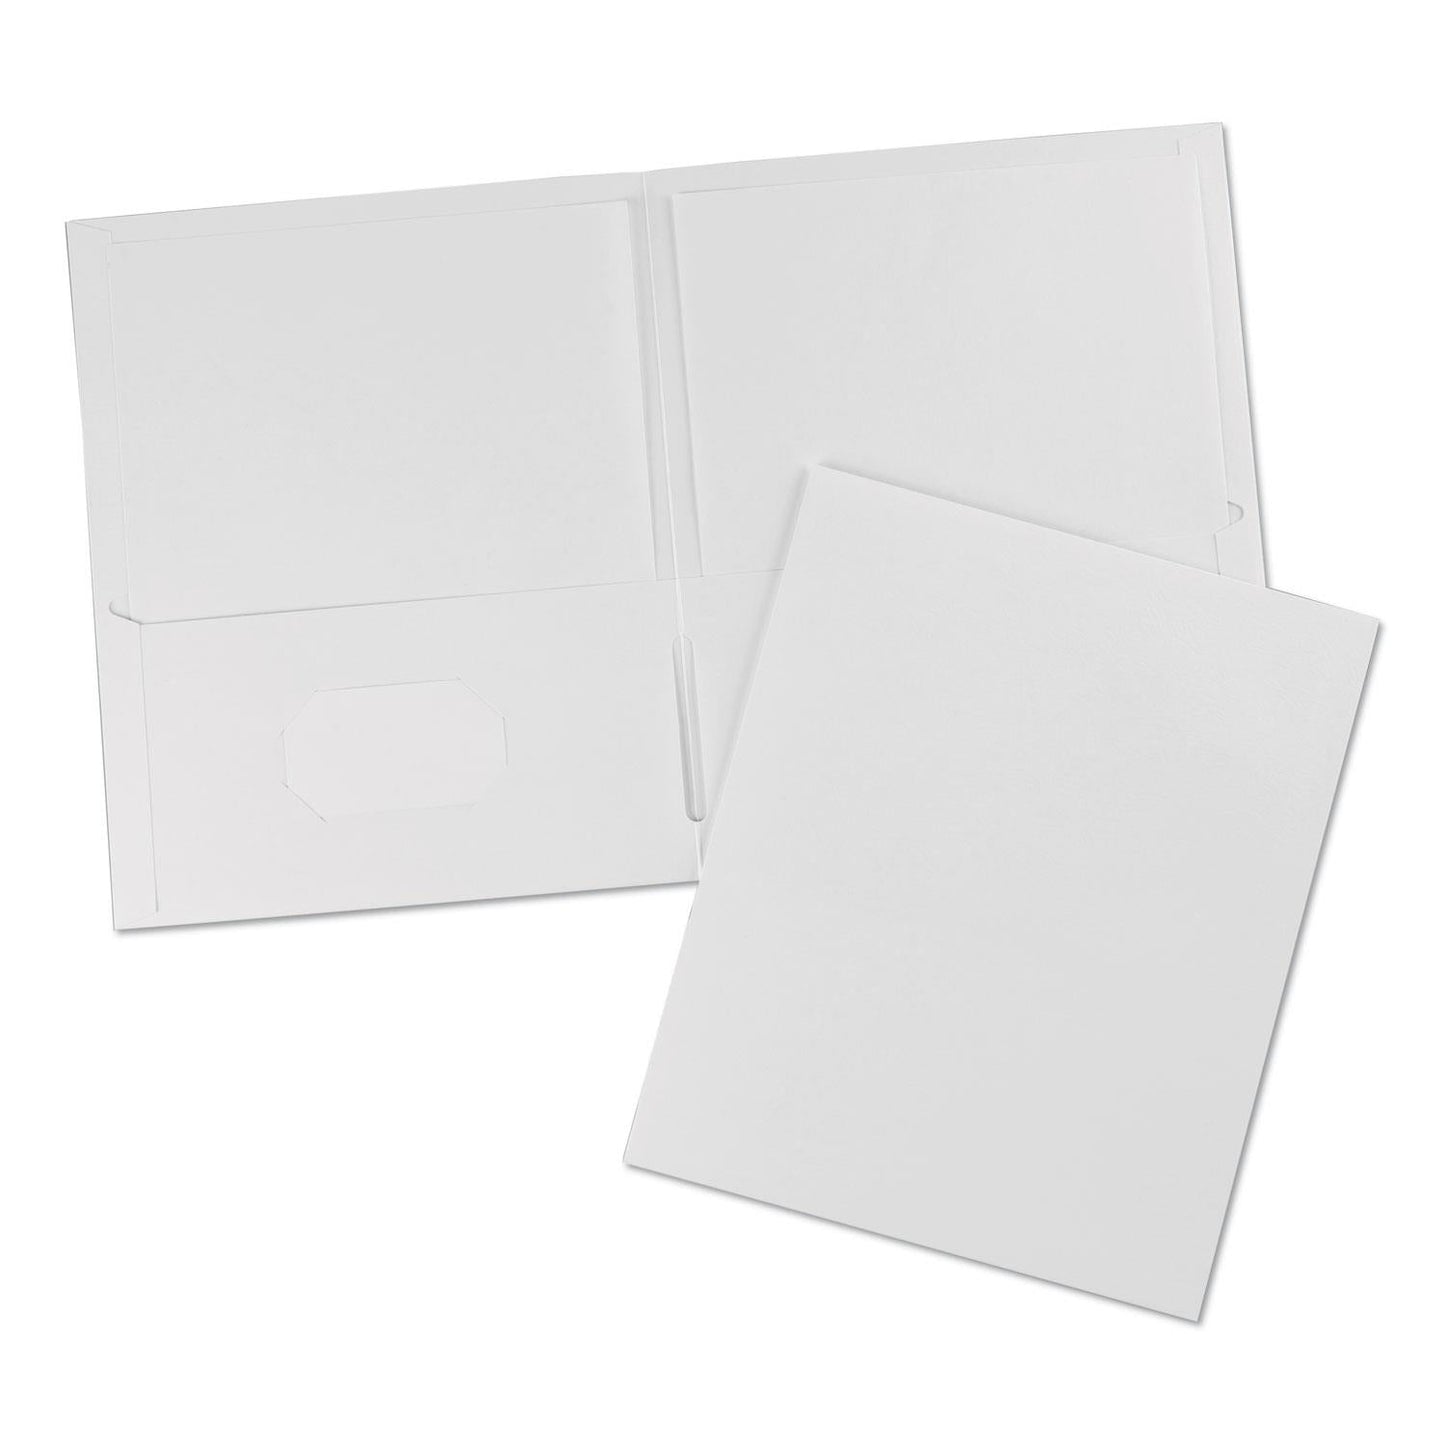 2-Pockets Paper Folder White 25/Box